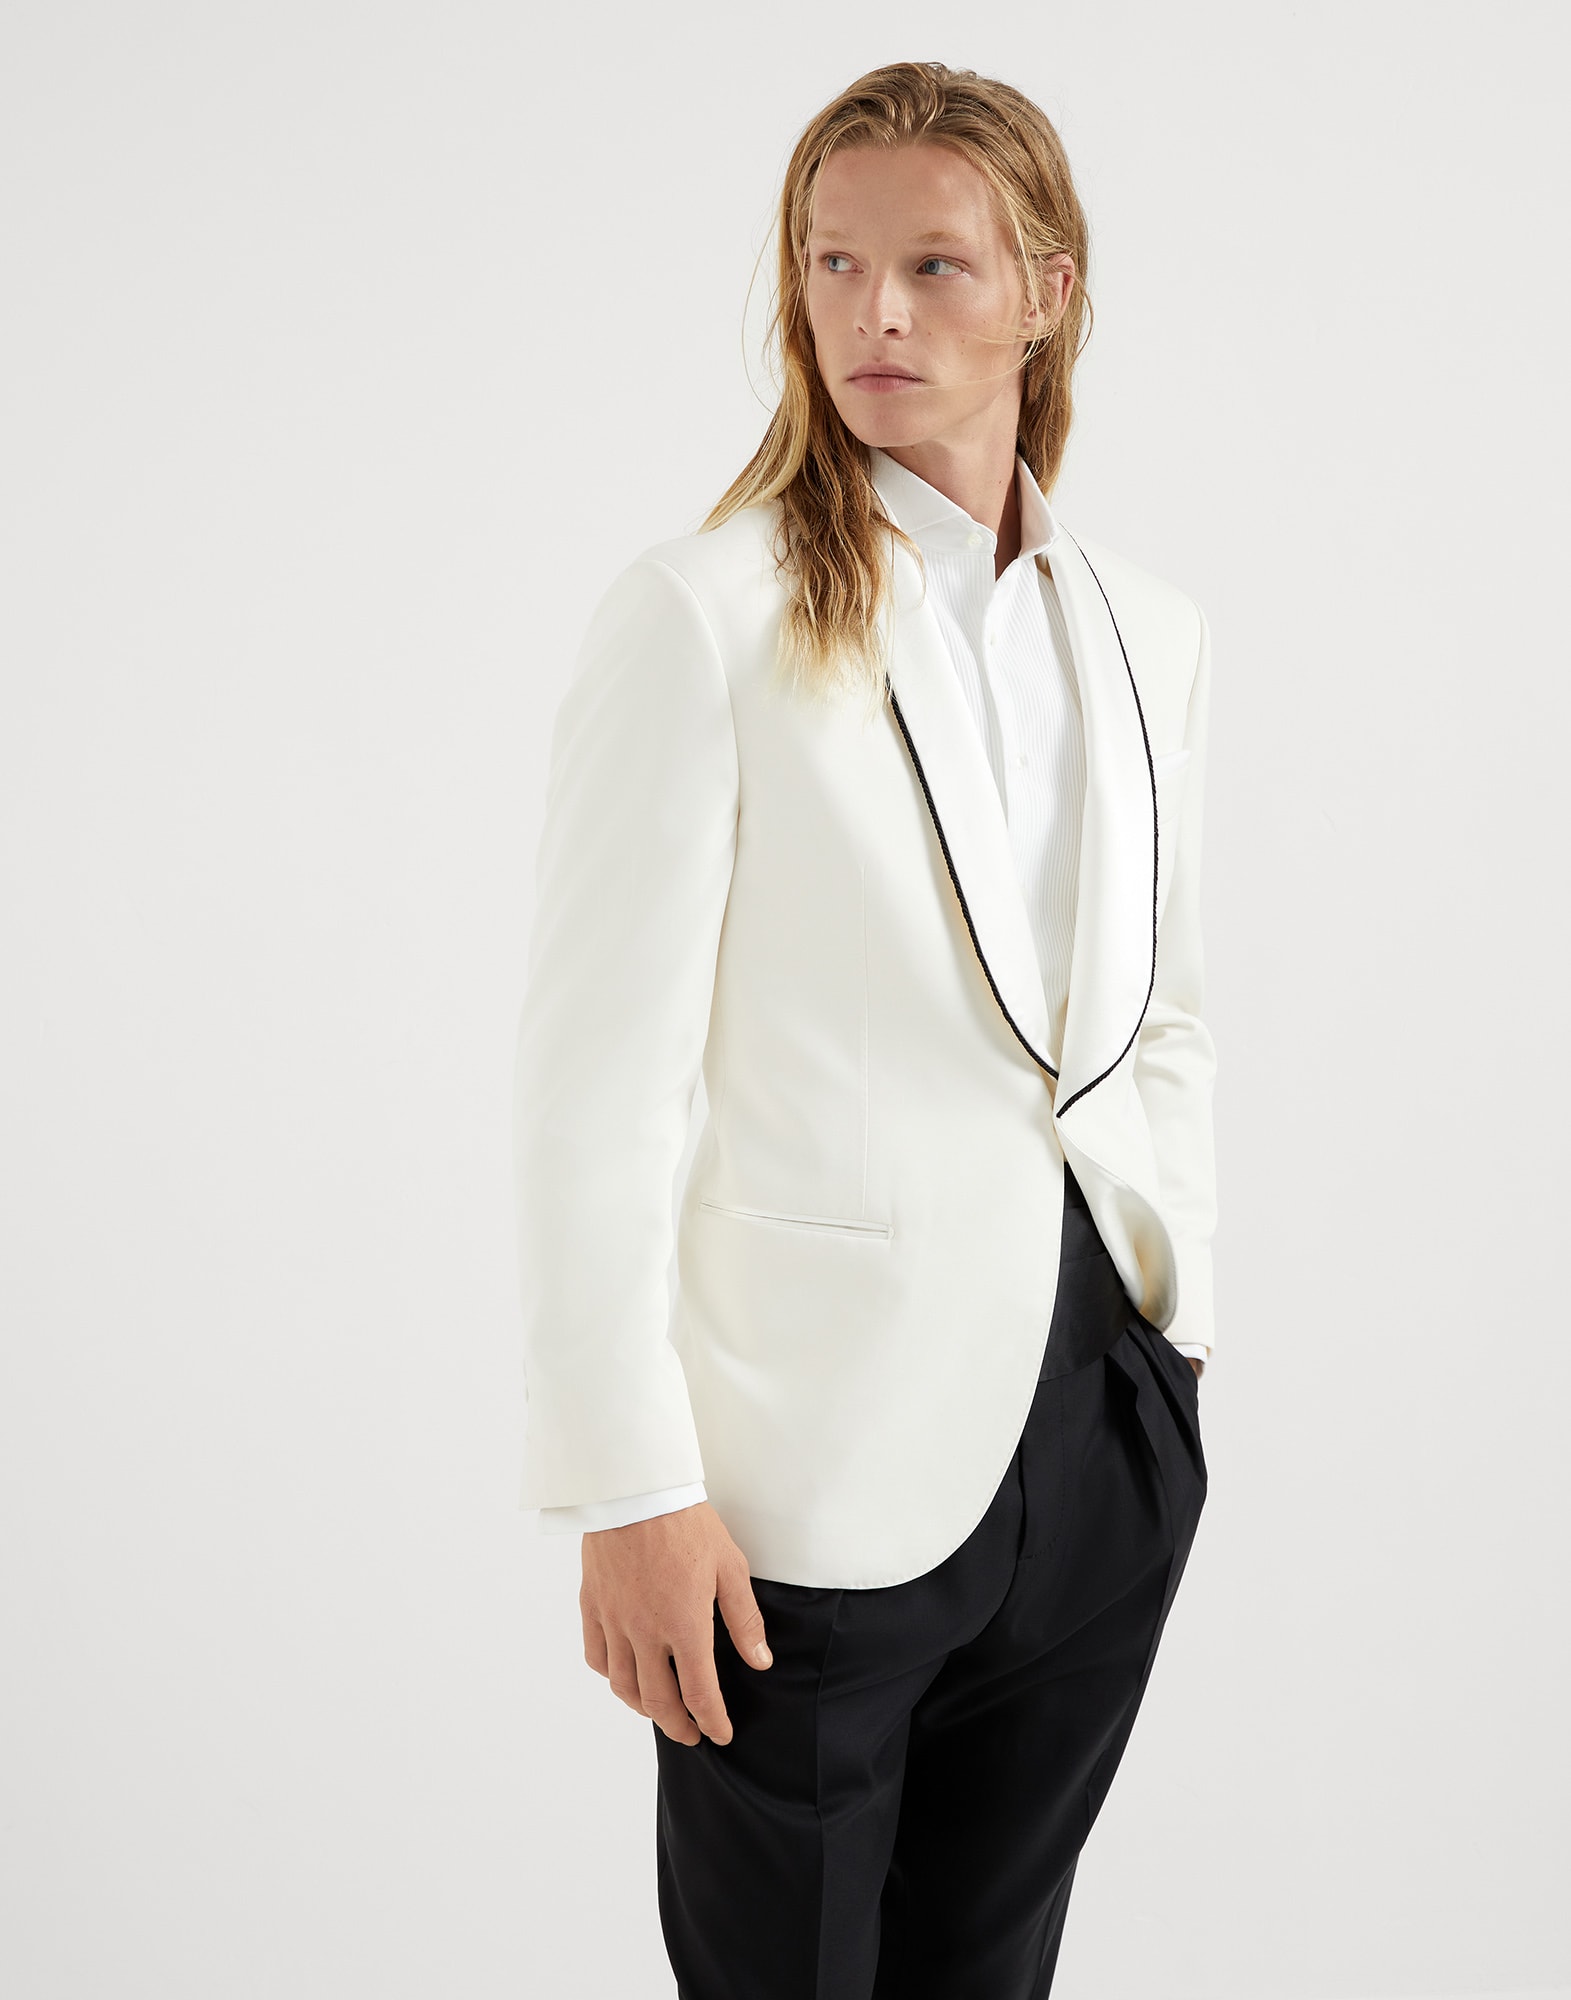 Пиджак для смокинга Белый с Сероватым Оттенком Мужчина - Brunello Cucinelli